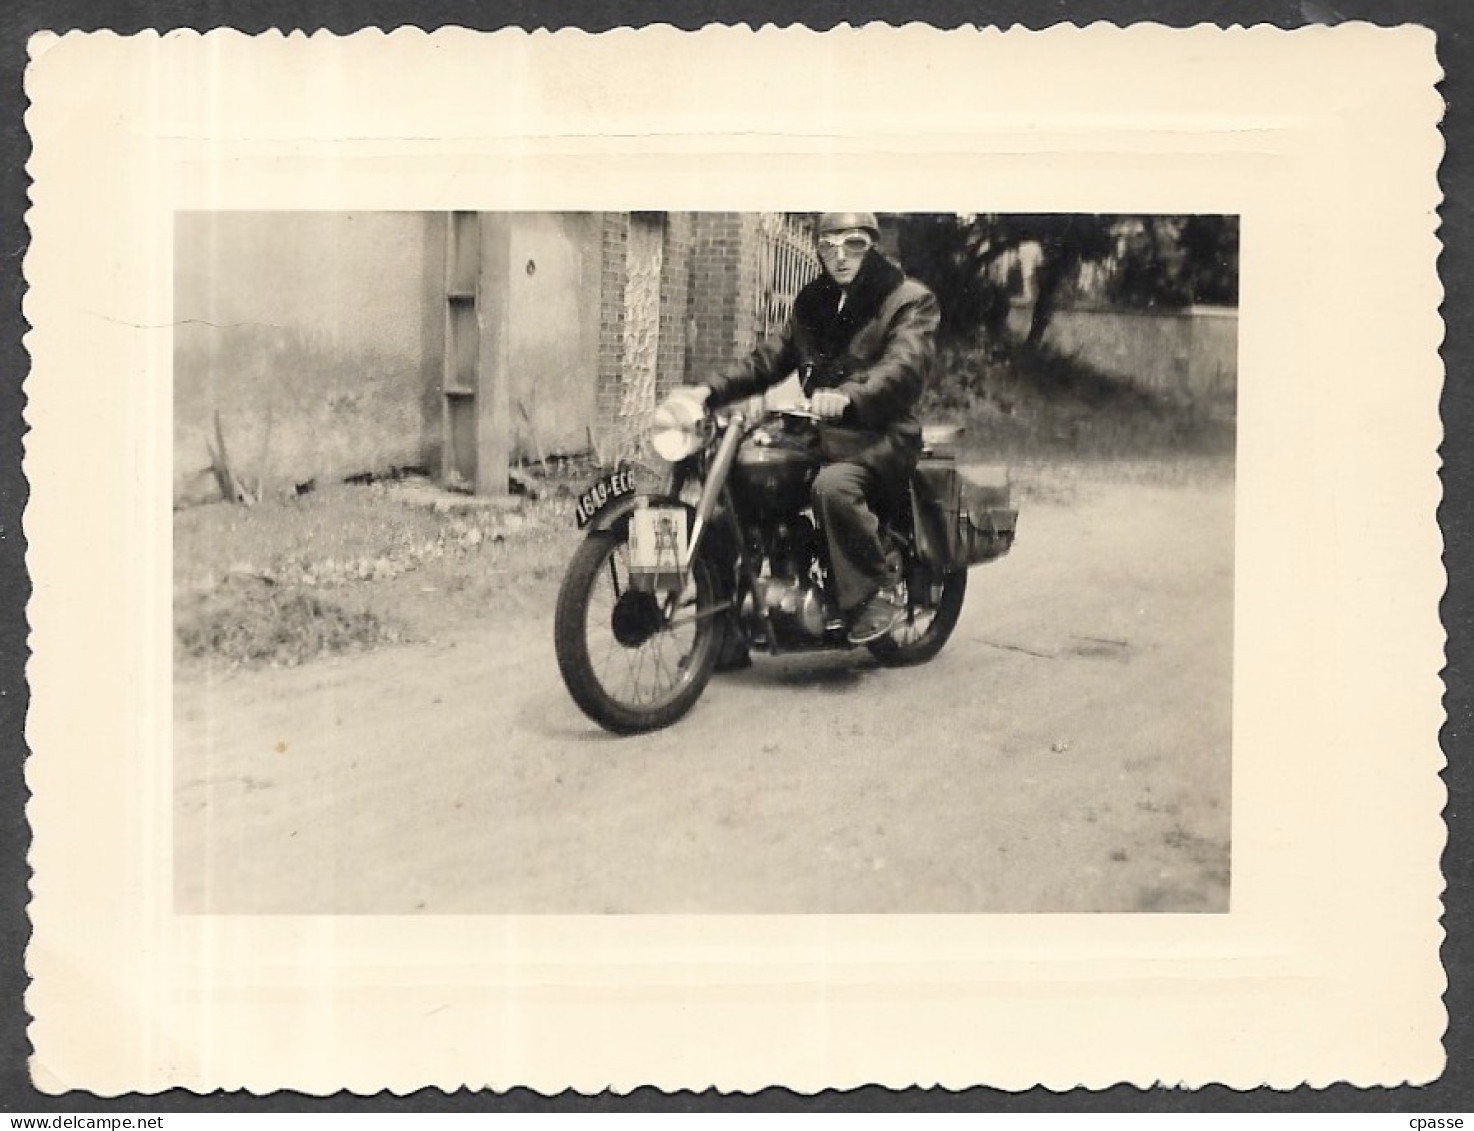 PHOTO Photographie Amateur - Homme Sur Moto Immatriculée 1649 EC6 Avec Bidon D'huile VEEDOL - Automobiles